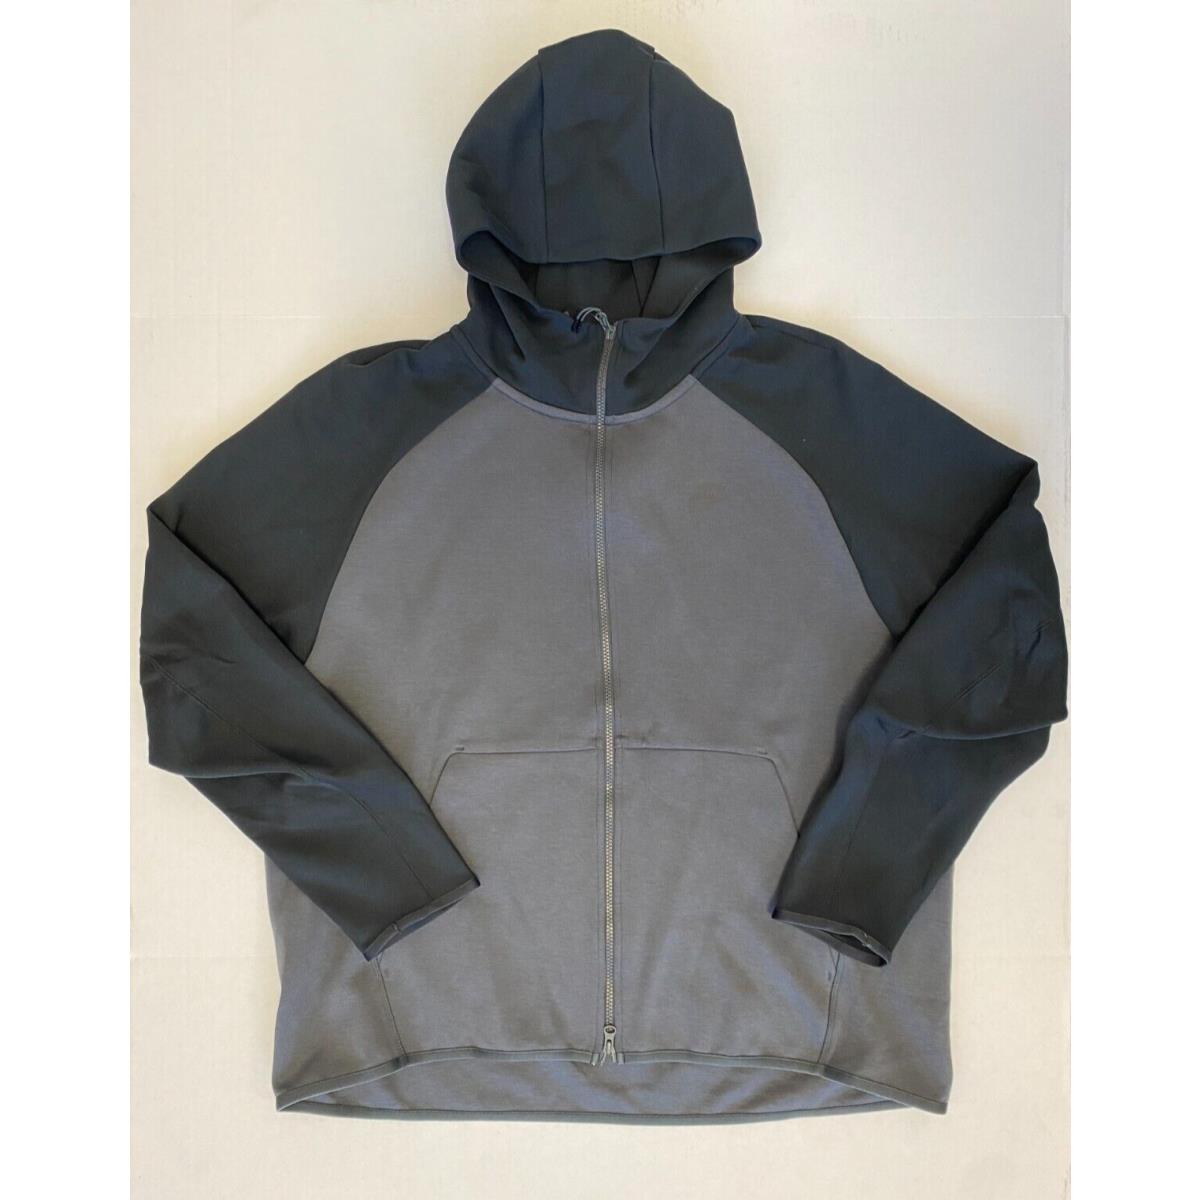 Nike Sportswear Tech Fleece Anthracite Black Full Zip Hoodie 928483-060 Size Xxl